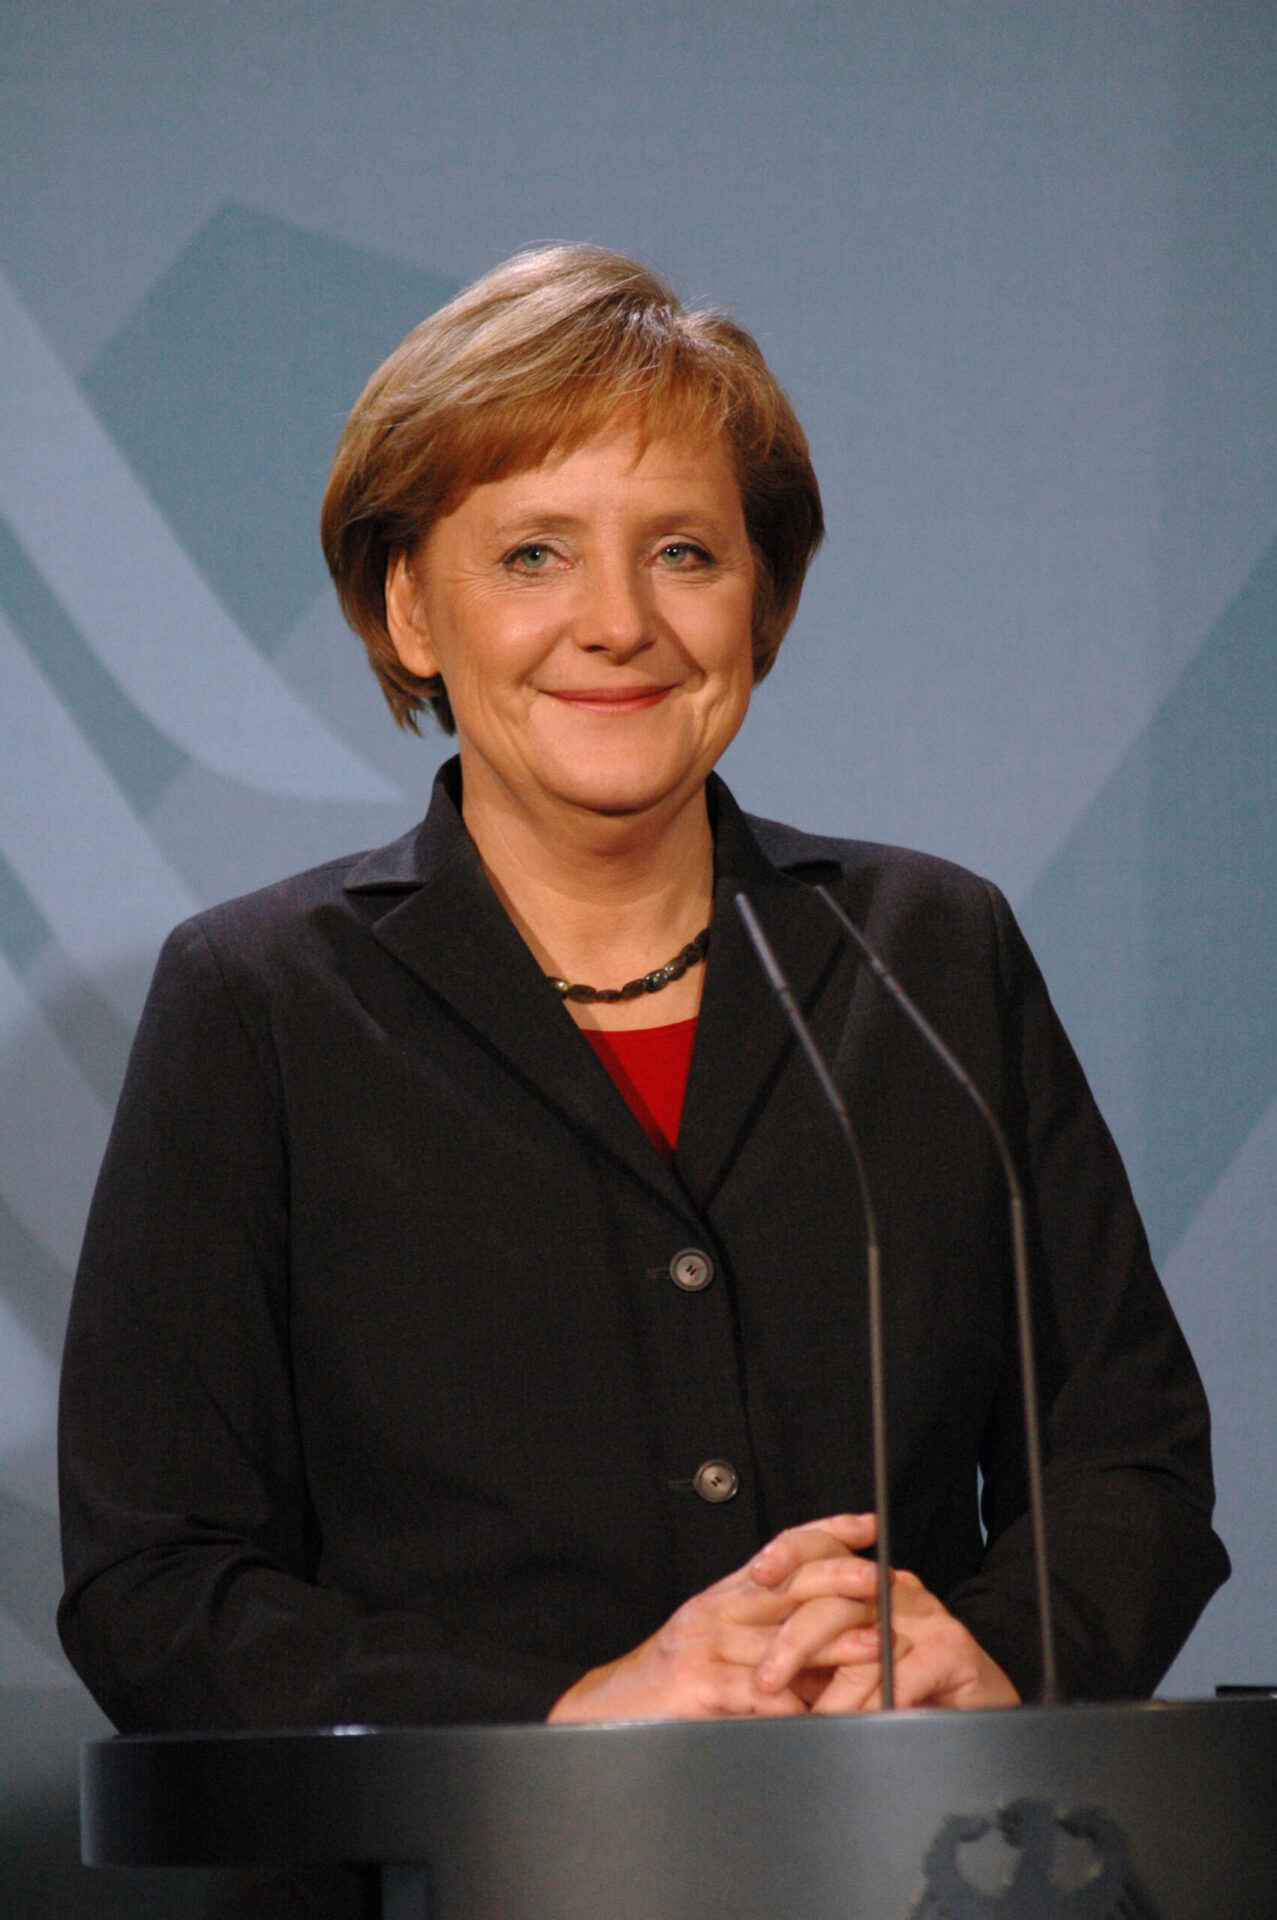 Photo of Angela Merkel